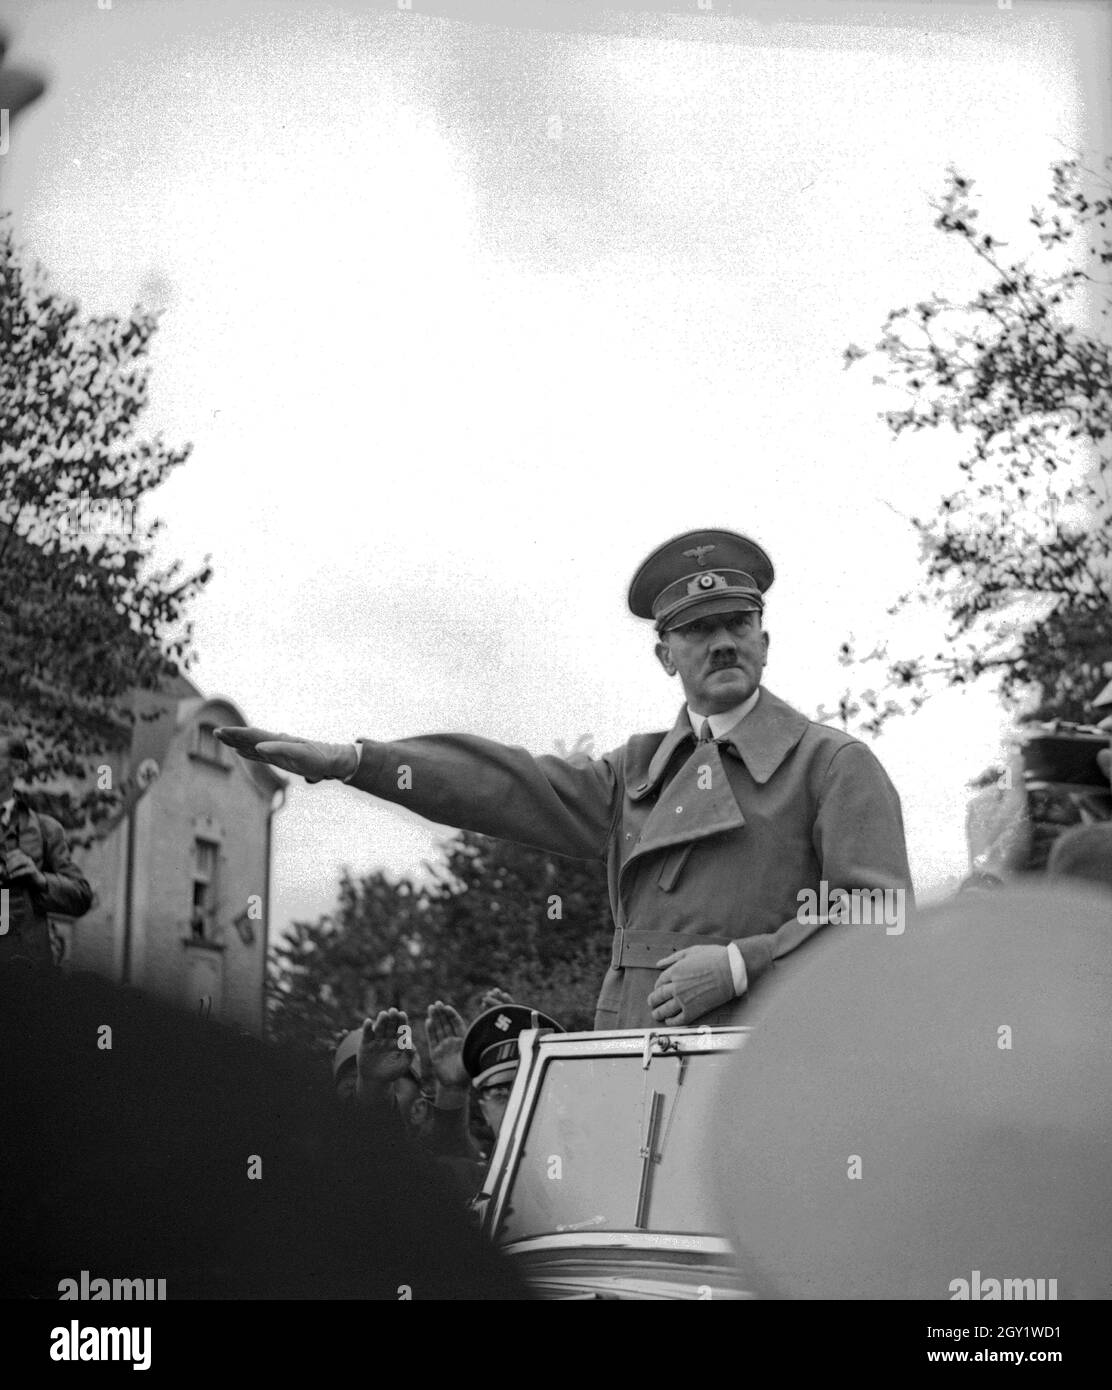 Führer und Reichskanzler Adolf Hitler bei seinem Besuch in Asch im Sudetenland, Deutschland 1930er Jahre. Fuehrer and chancellor Adolf Hitler visiting the city of Asch in Sudetenland county, Germany 1930s. Stock Photo